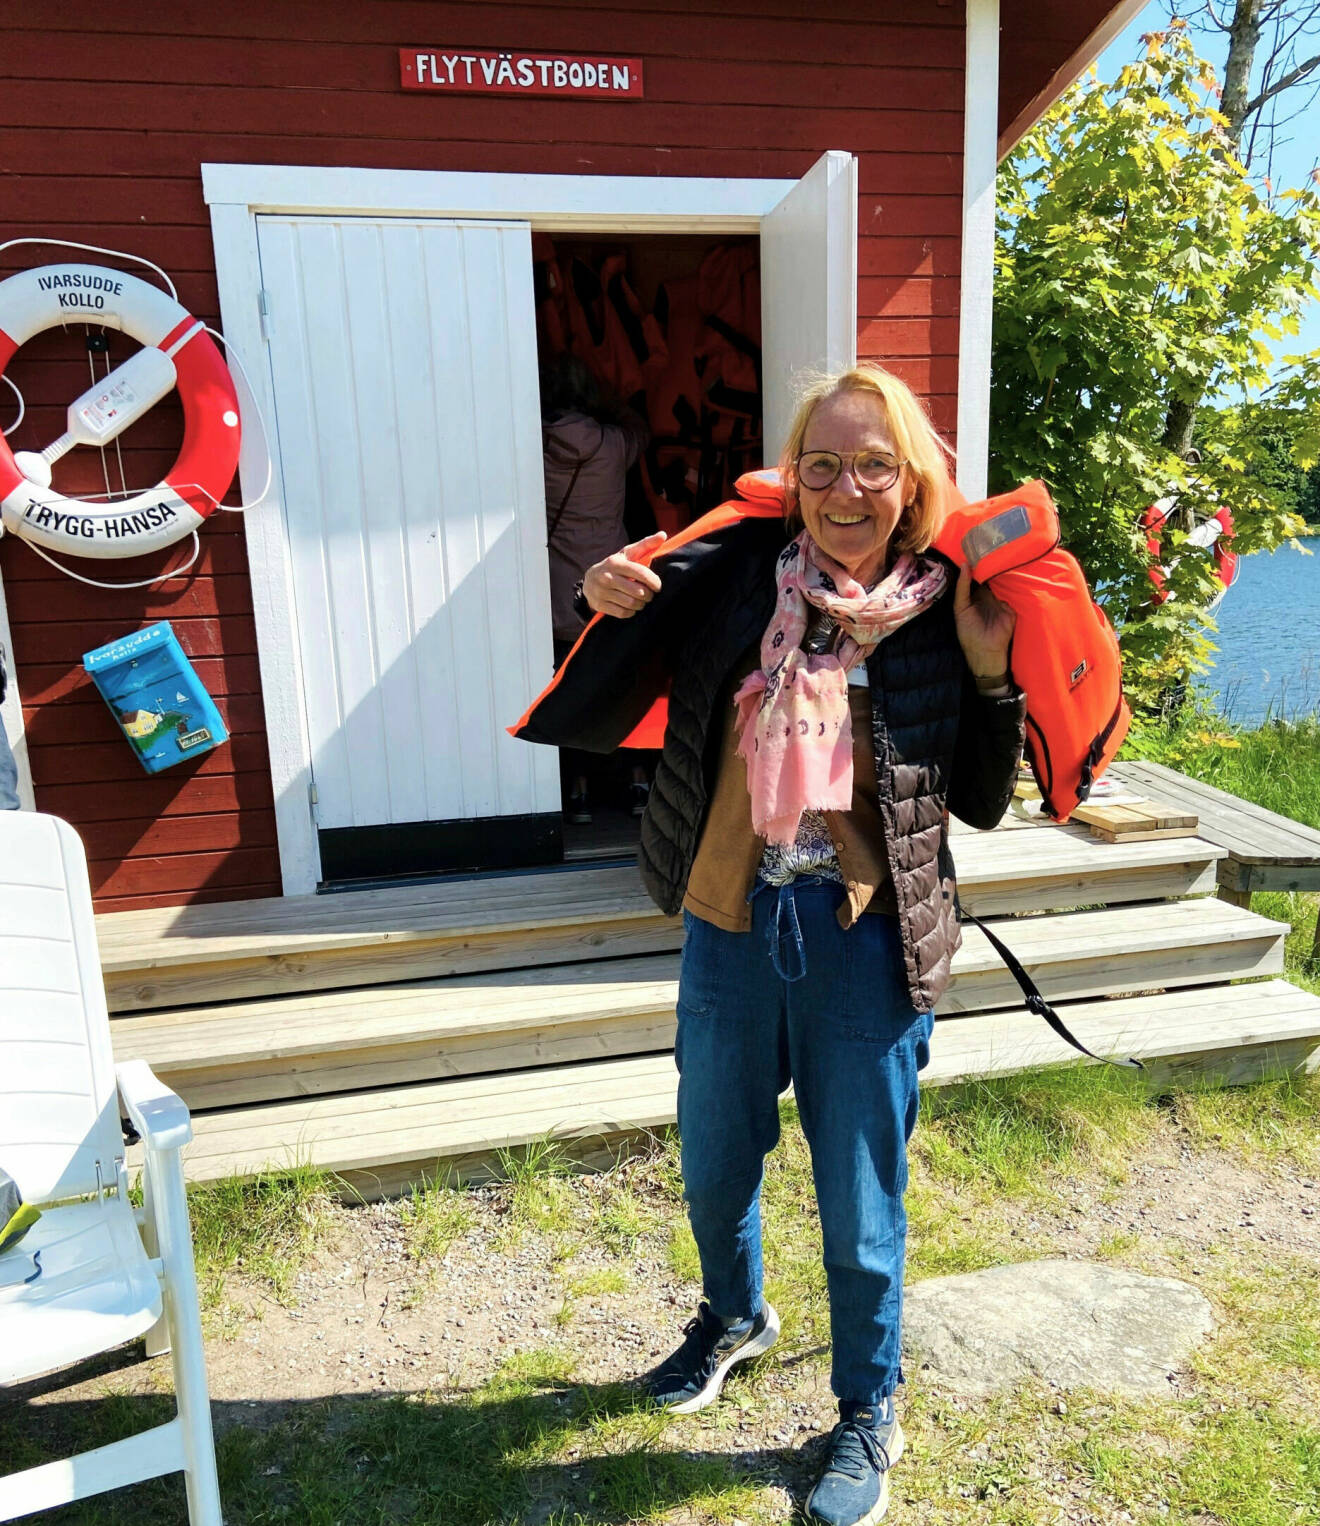 Kvinna med jeans, glasögon och sneakers tar på sig en flytväst ute vid trappan till ett litet rött hus med skylt där det står "Flytvästboden".